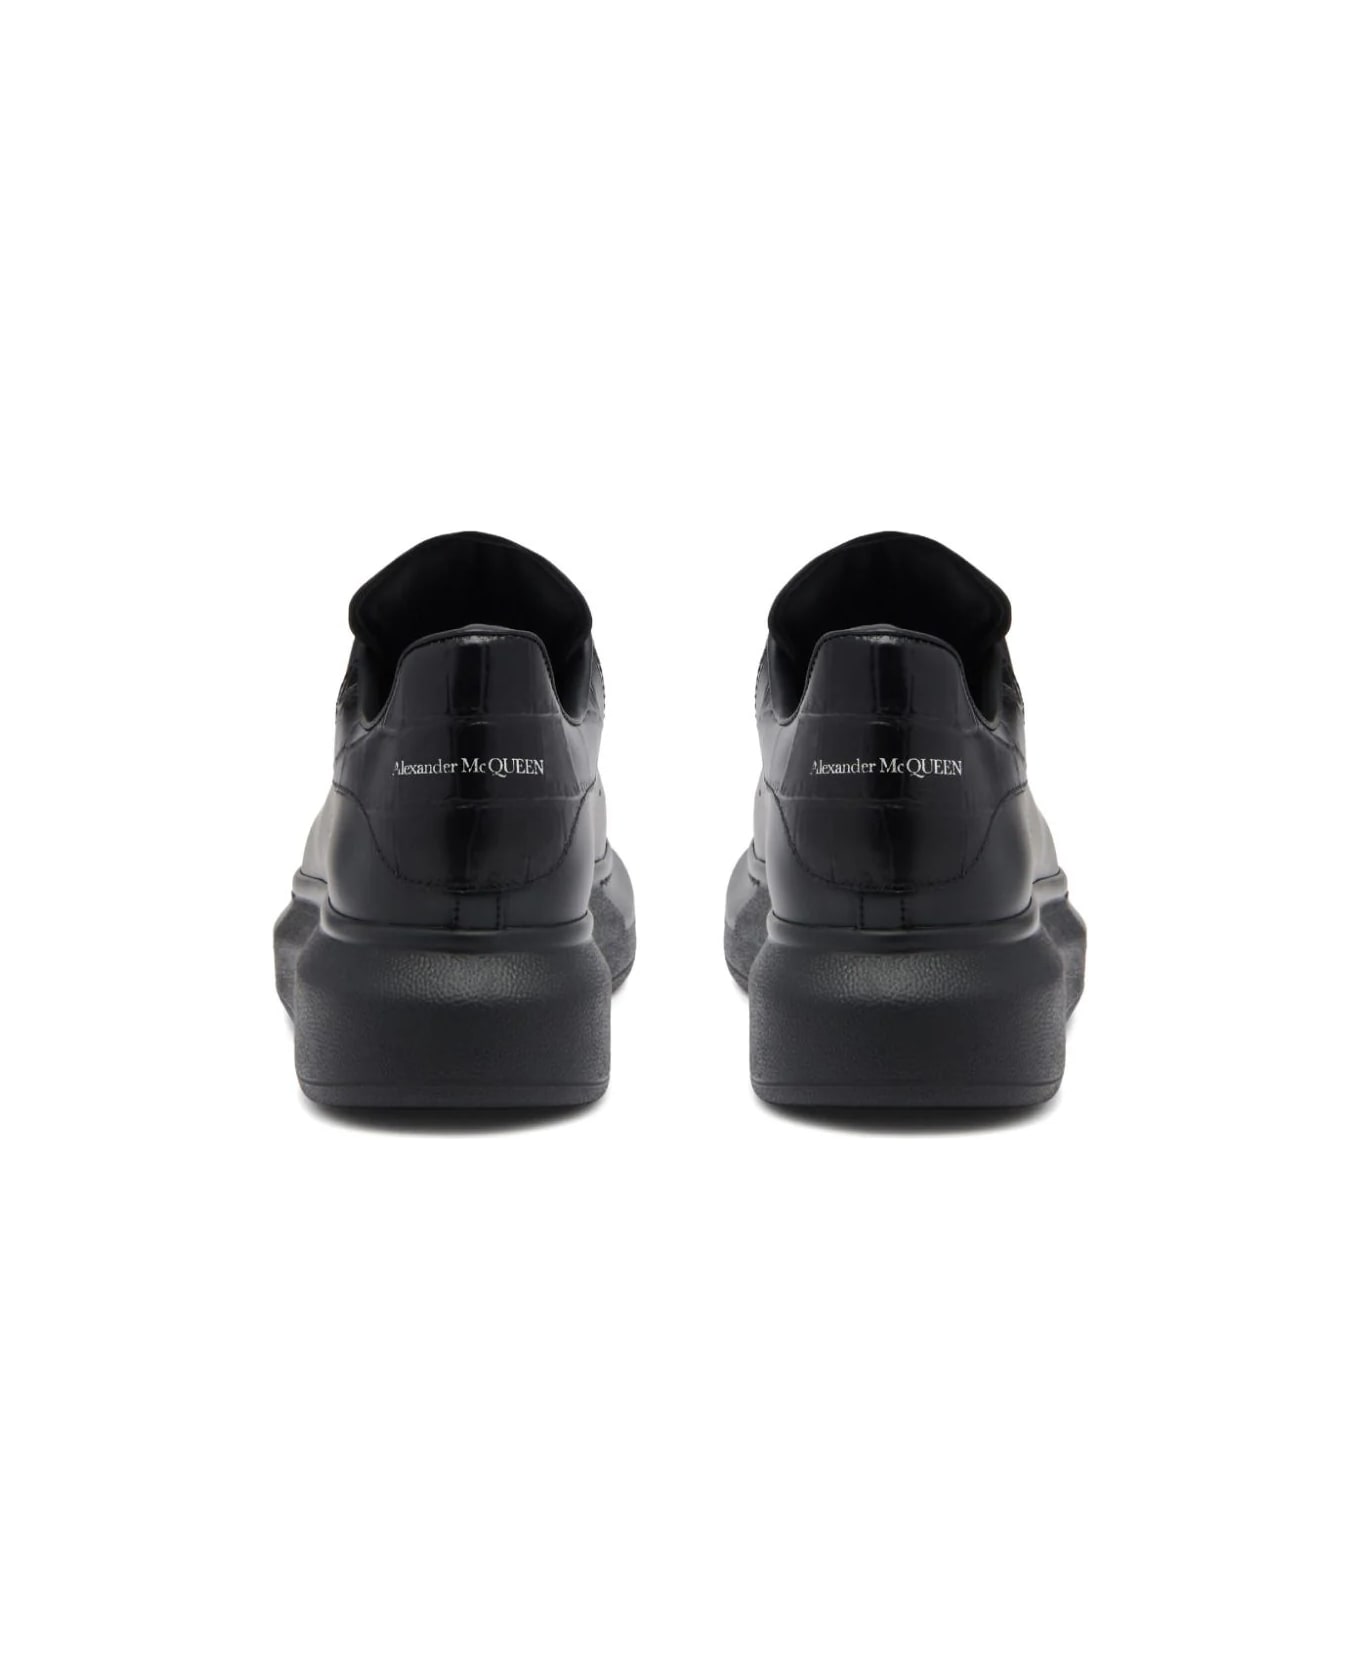 Alexander McQueen Oversized Leather Sneakers - Black ウェッジシューズ